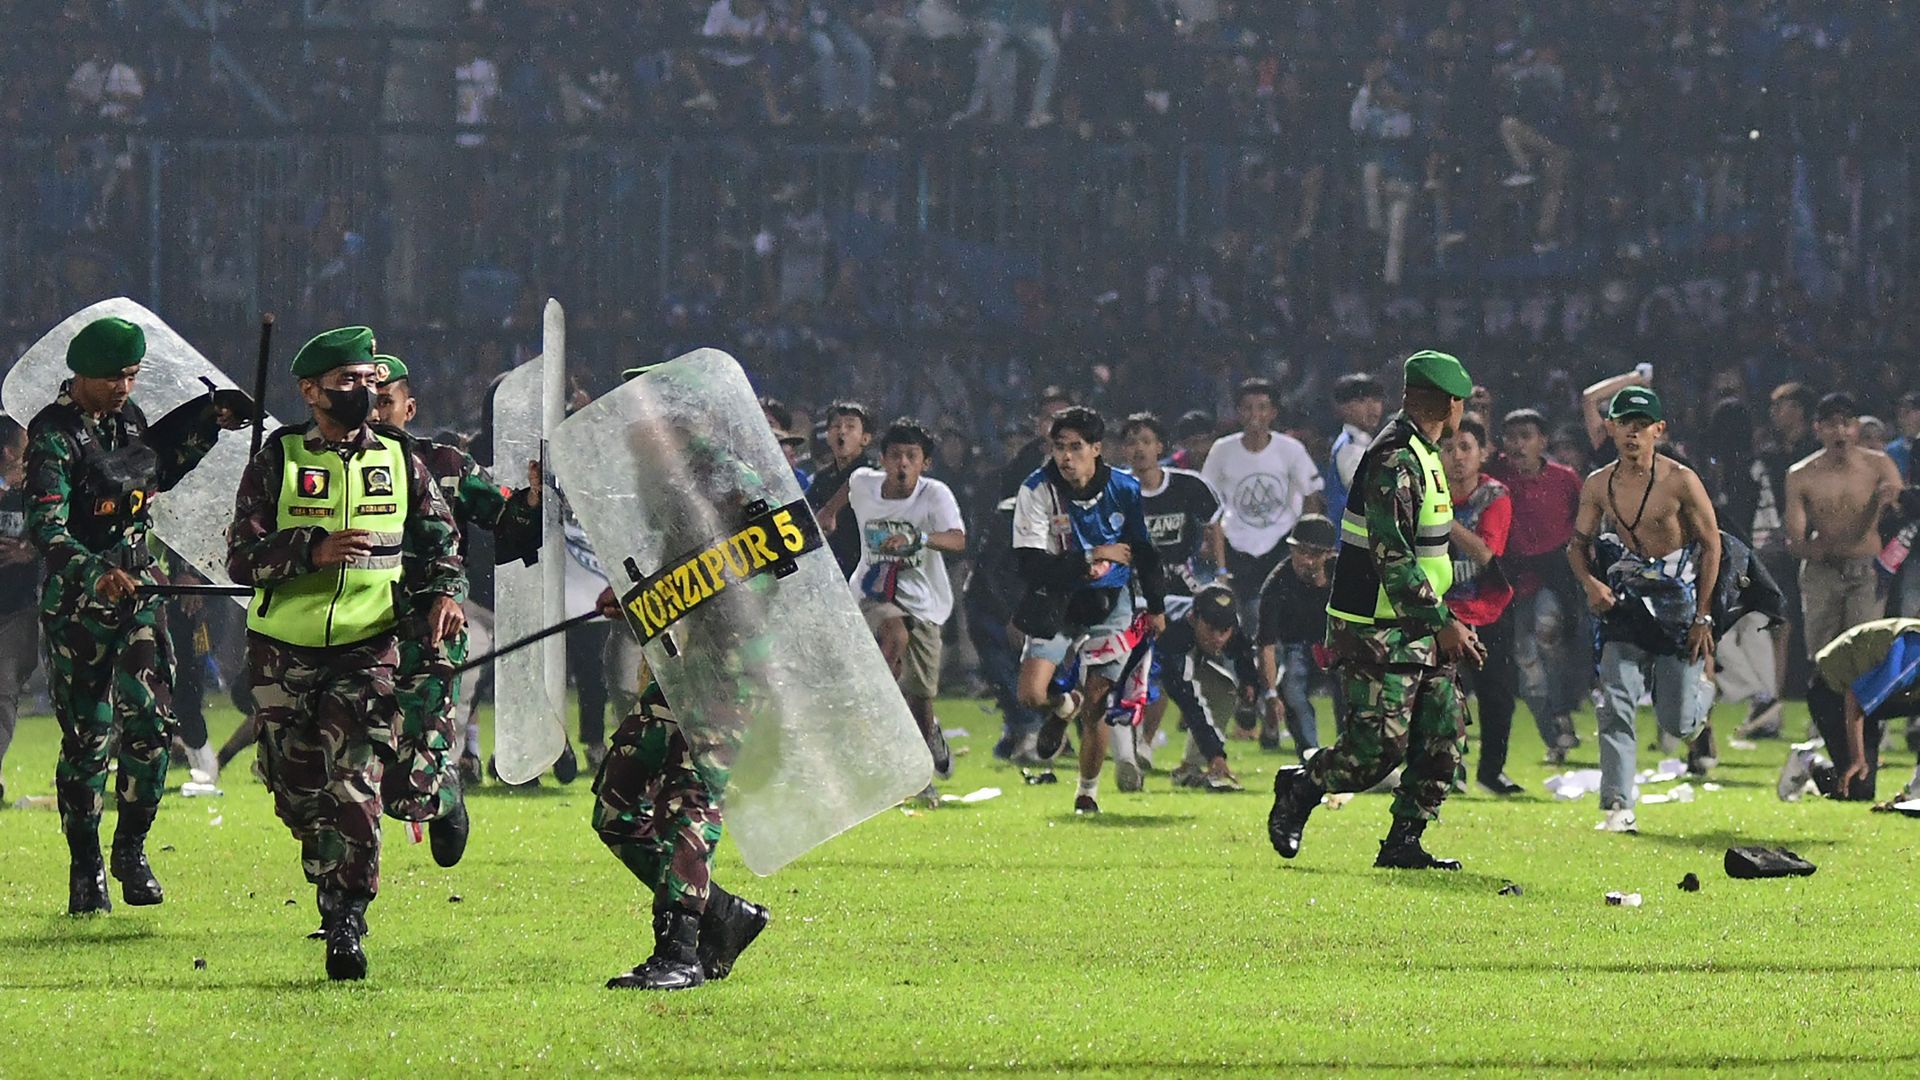 Indonesia soccer brawl